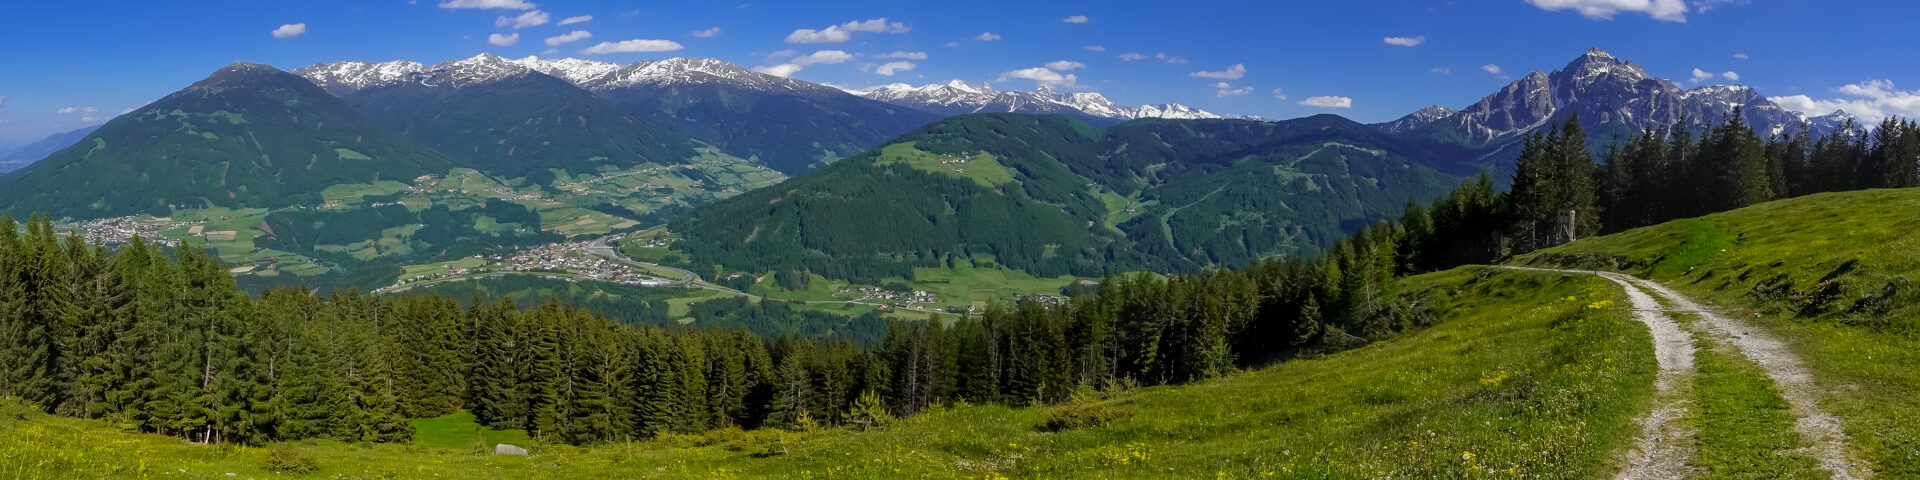 Mountainbike Touren über die Alpen